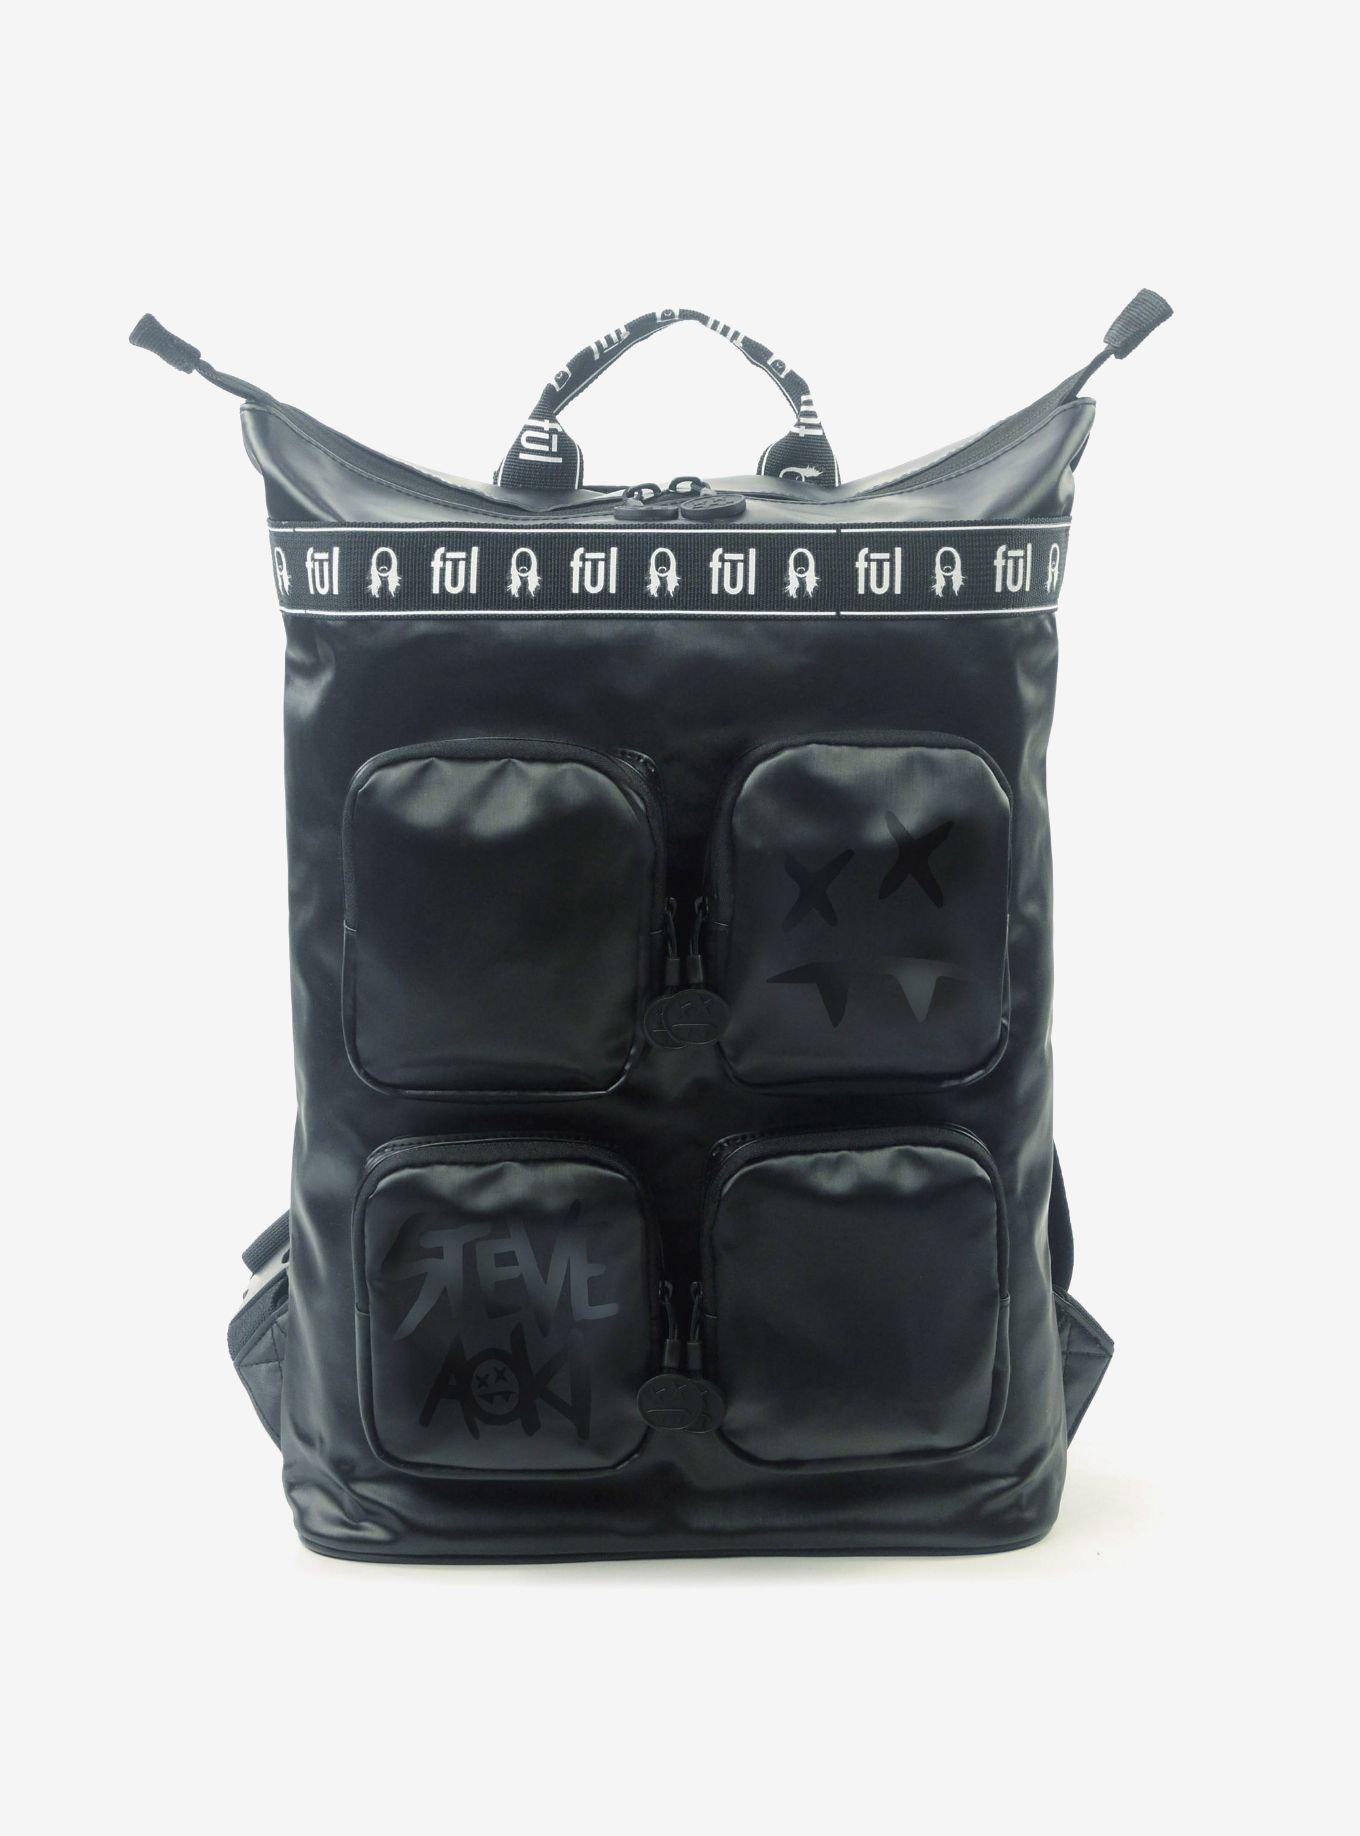 Steve Aoki FUL FANG Convertible Black Backpack Tote, , hi-res